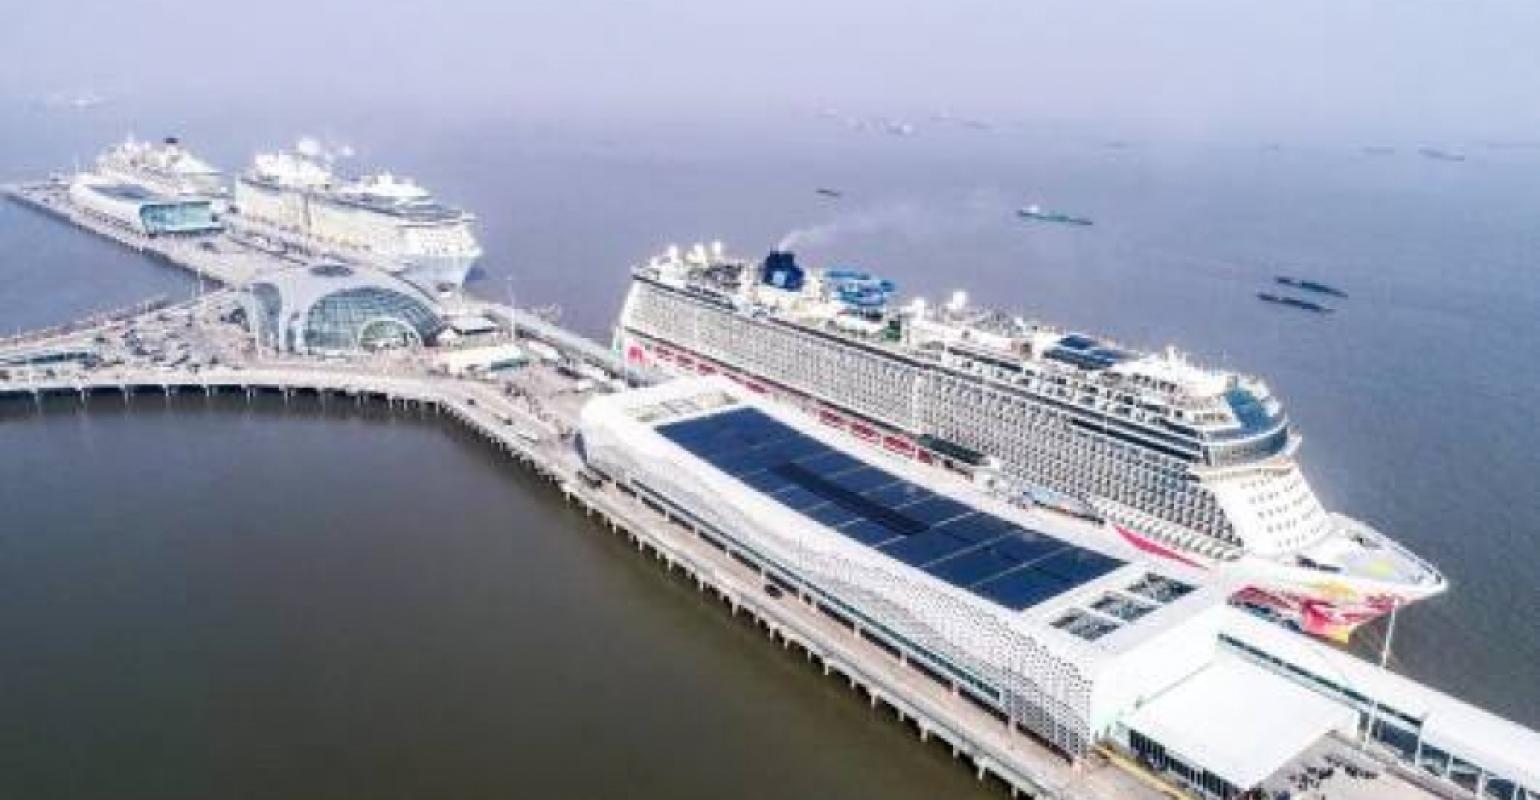 shanghai cruise ship